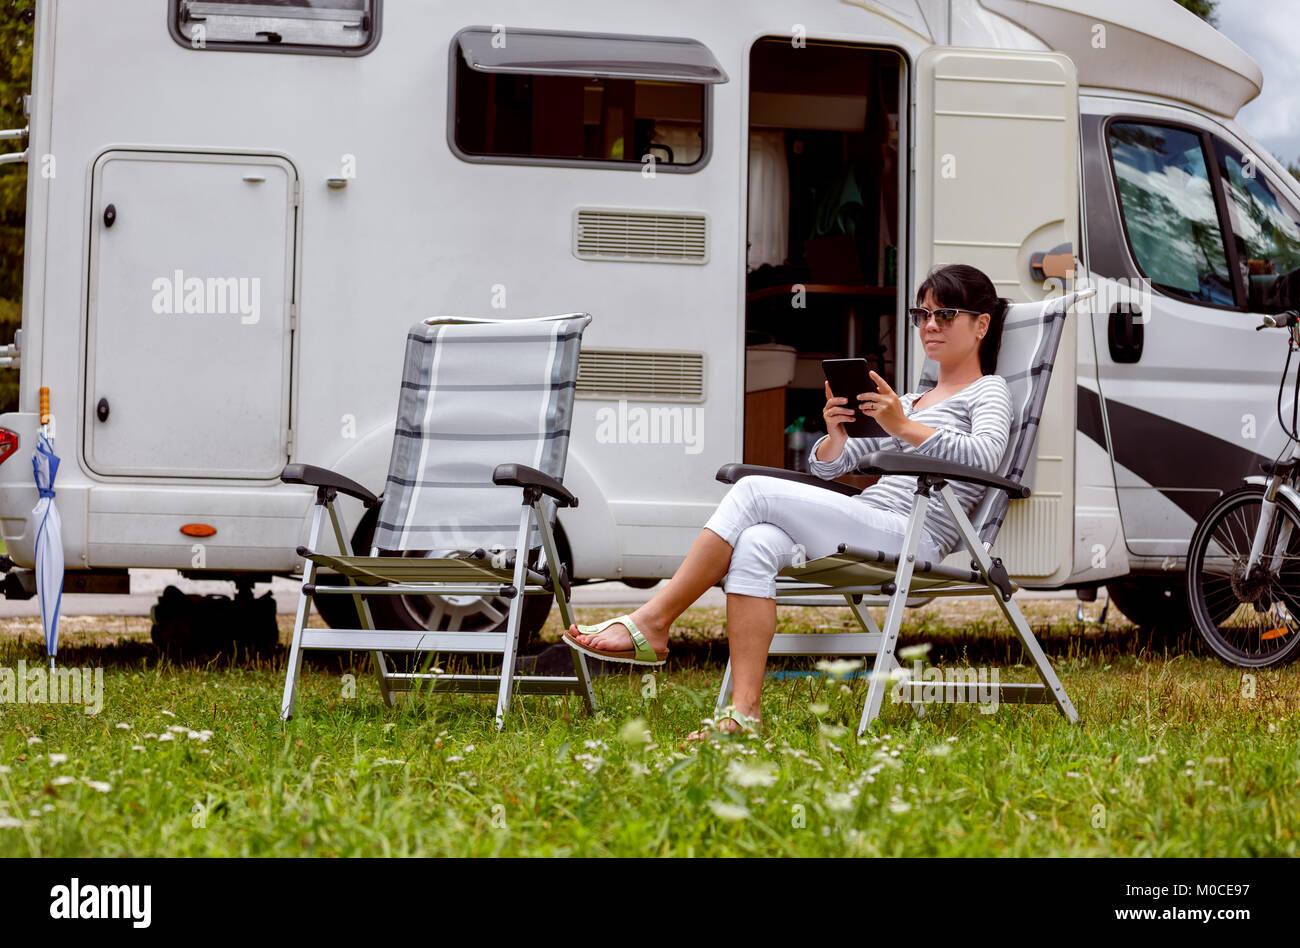 Femme regardant la tablette à côté du camping . Location caravane Vacances. Vacances famille vacances, voyages voyage en camping-car. Informations de connexion wi-fi Banque D'Images